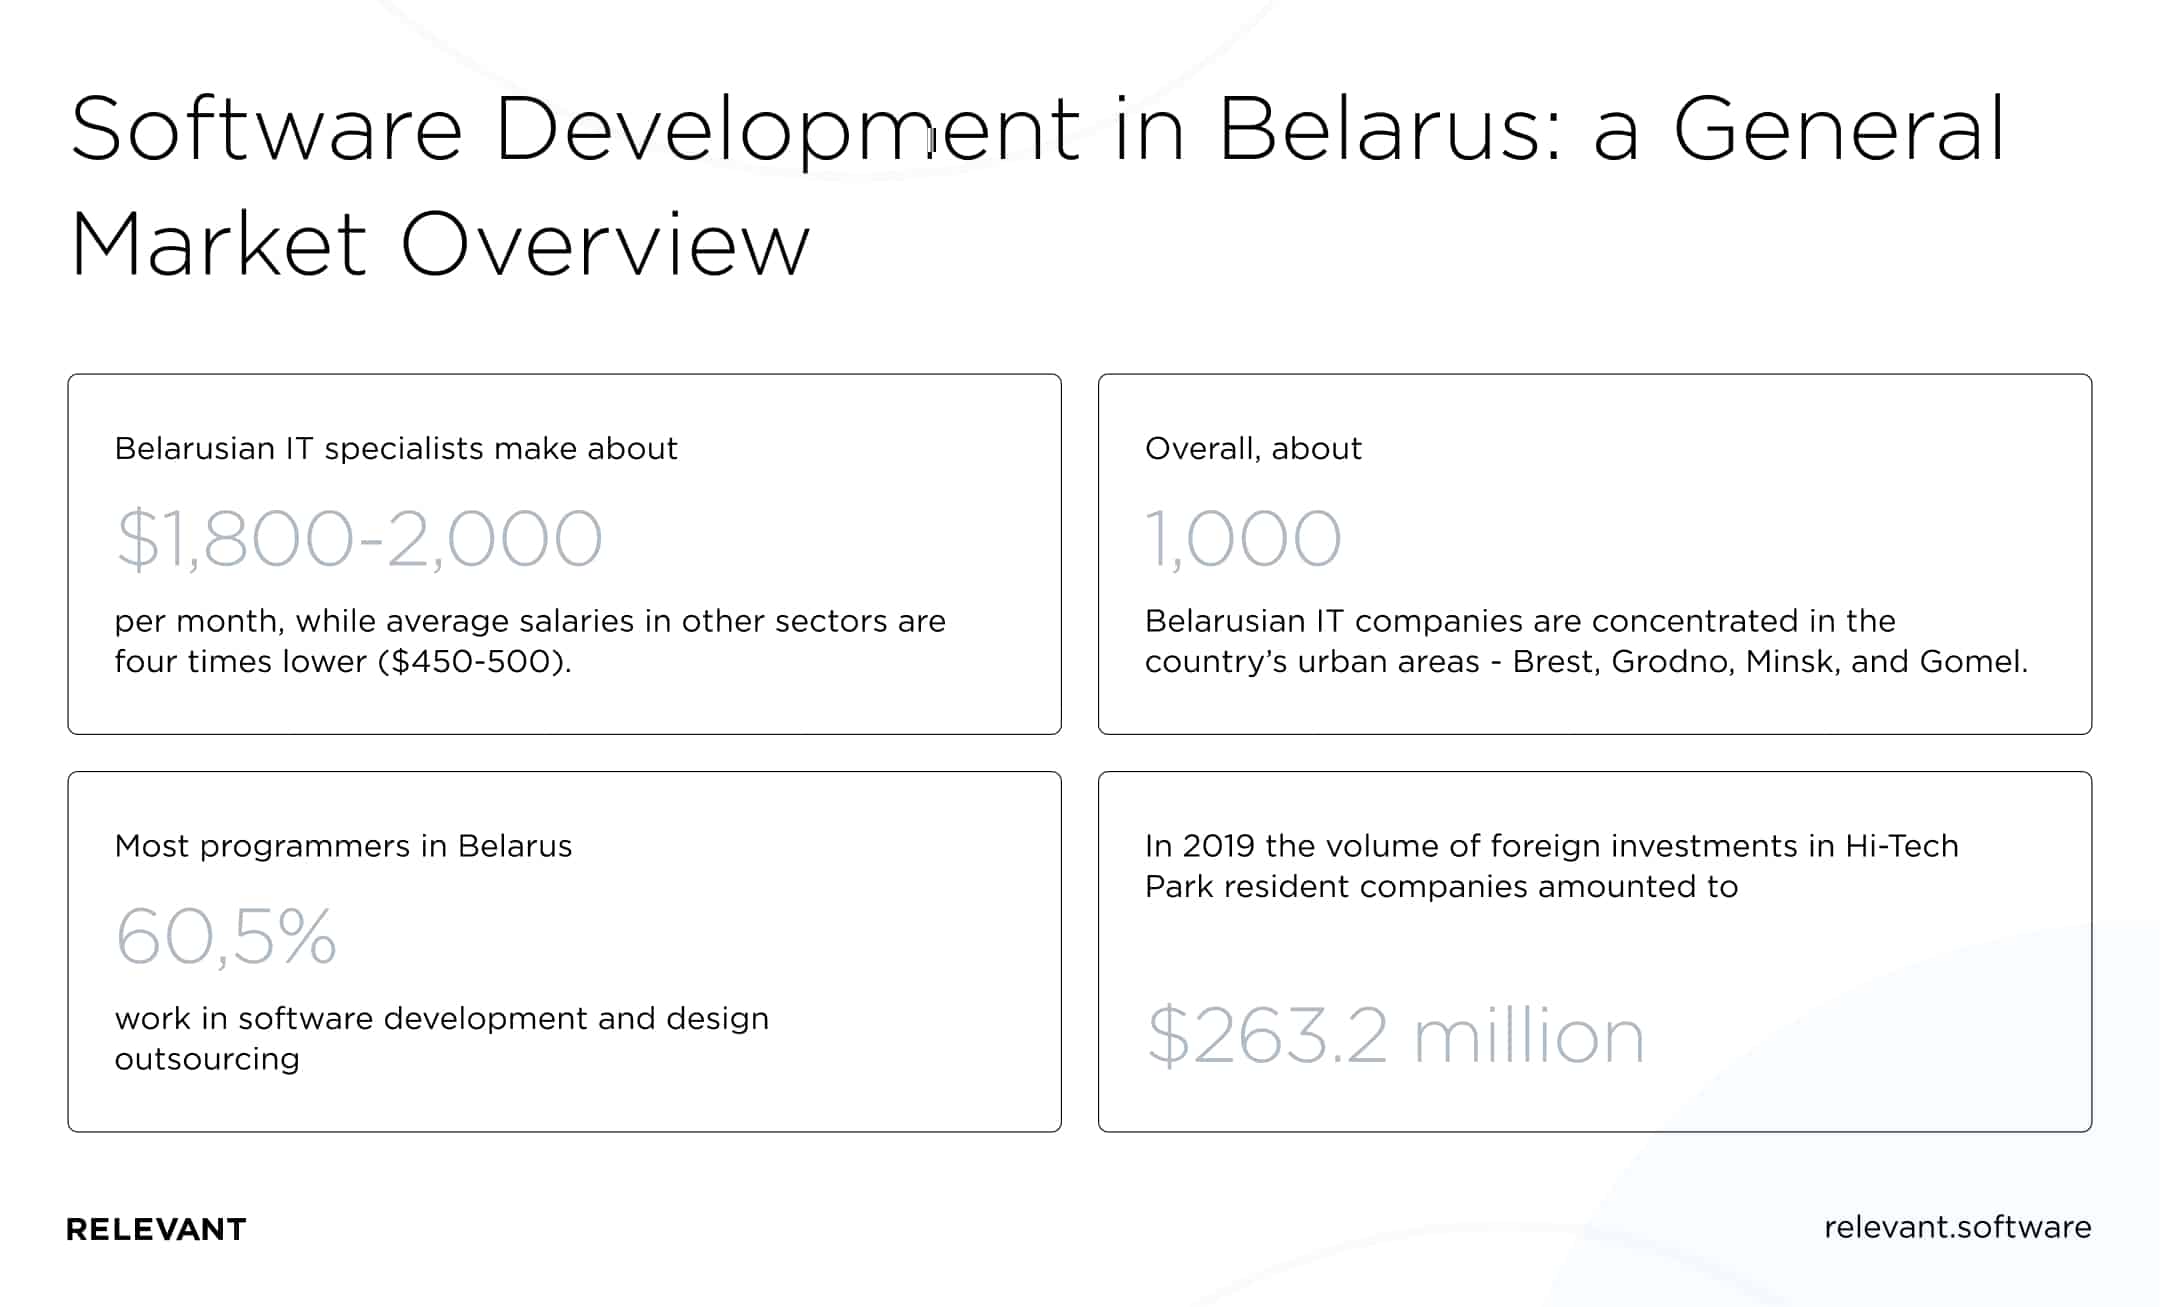 Software development in Belarus market overview